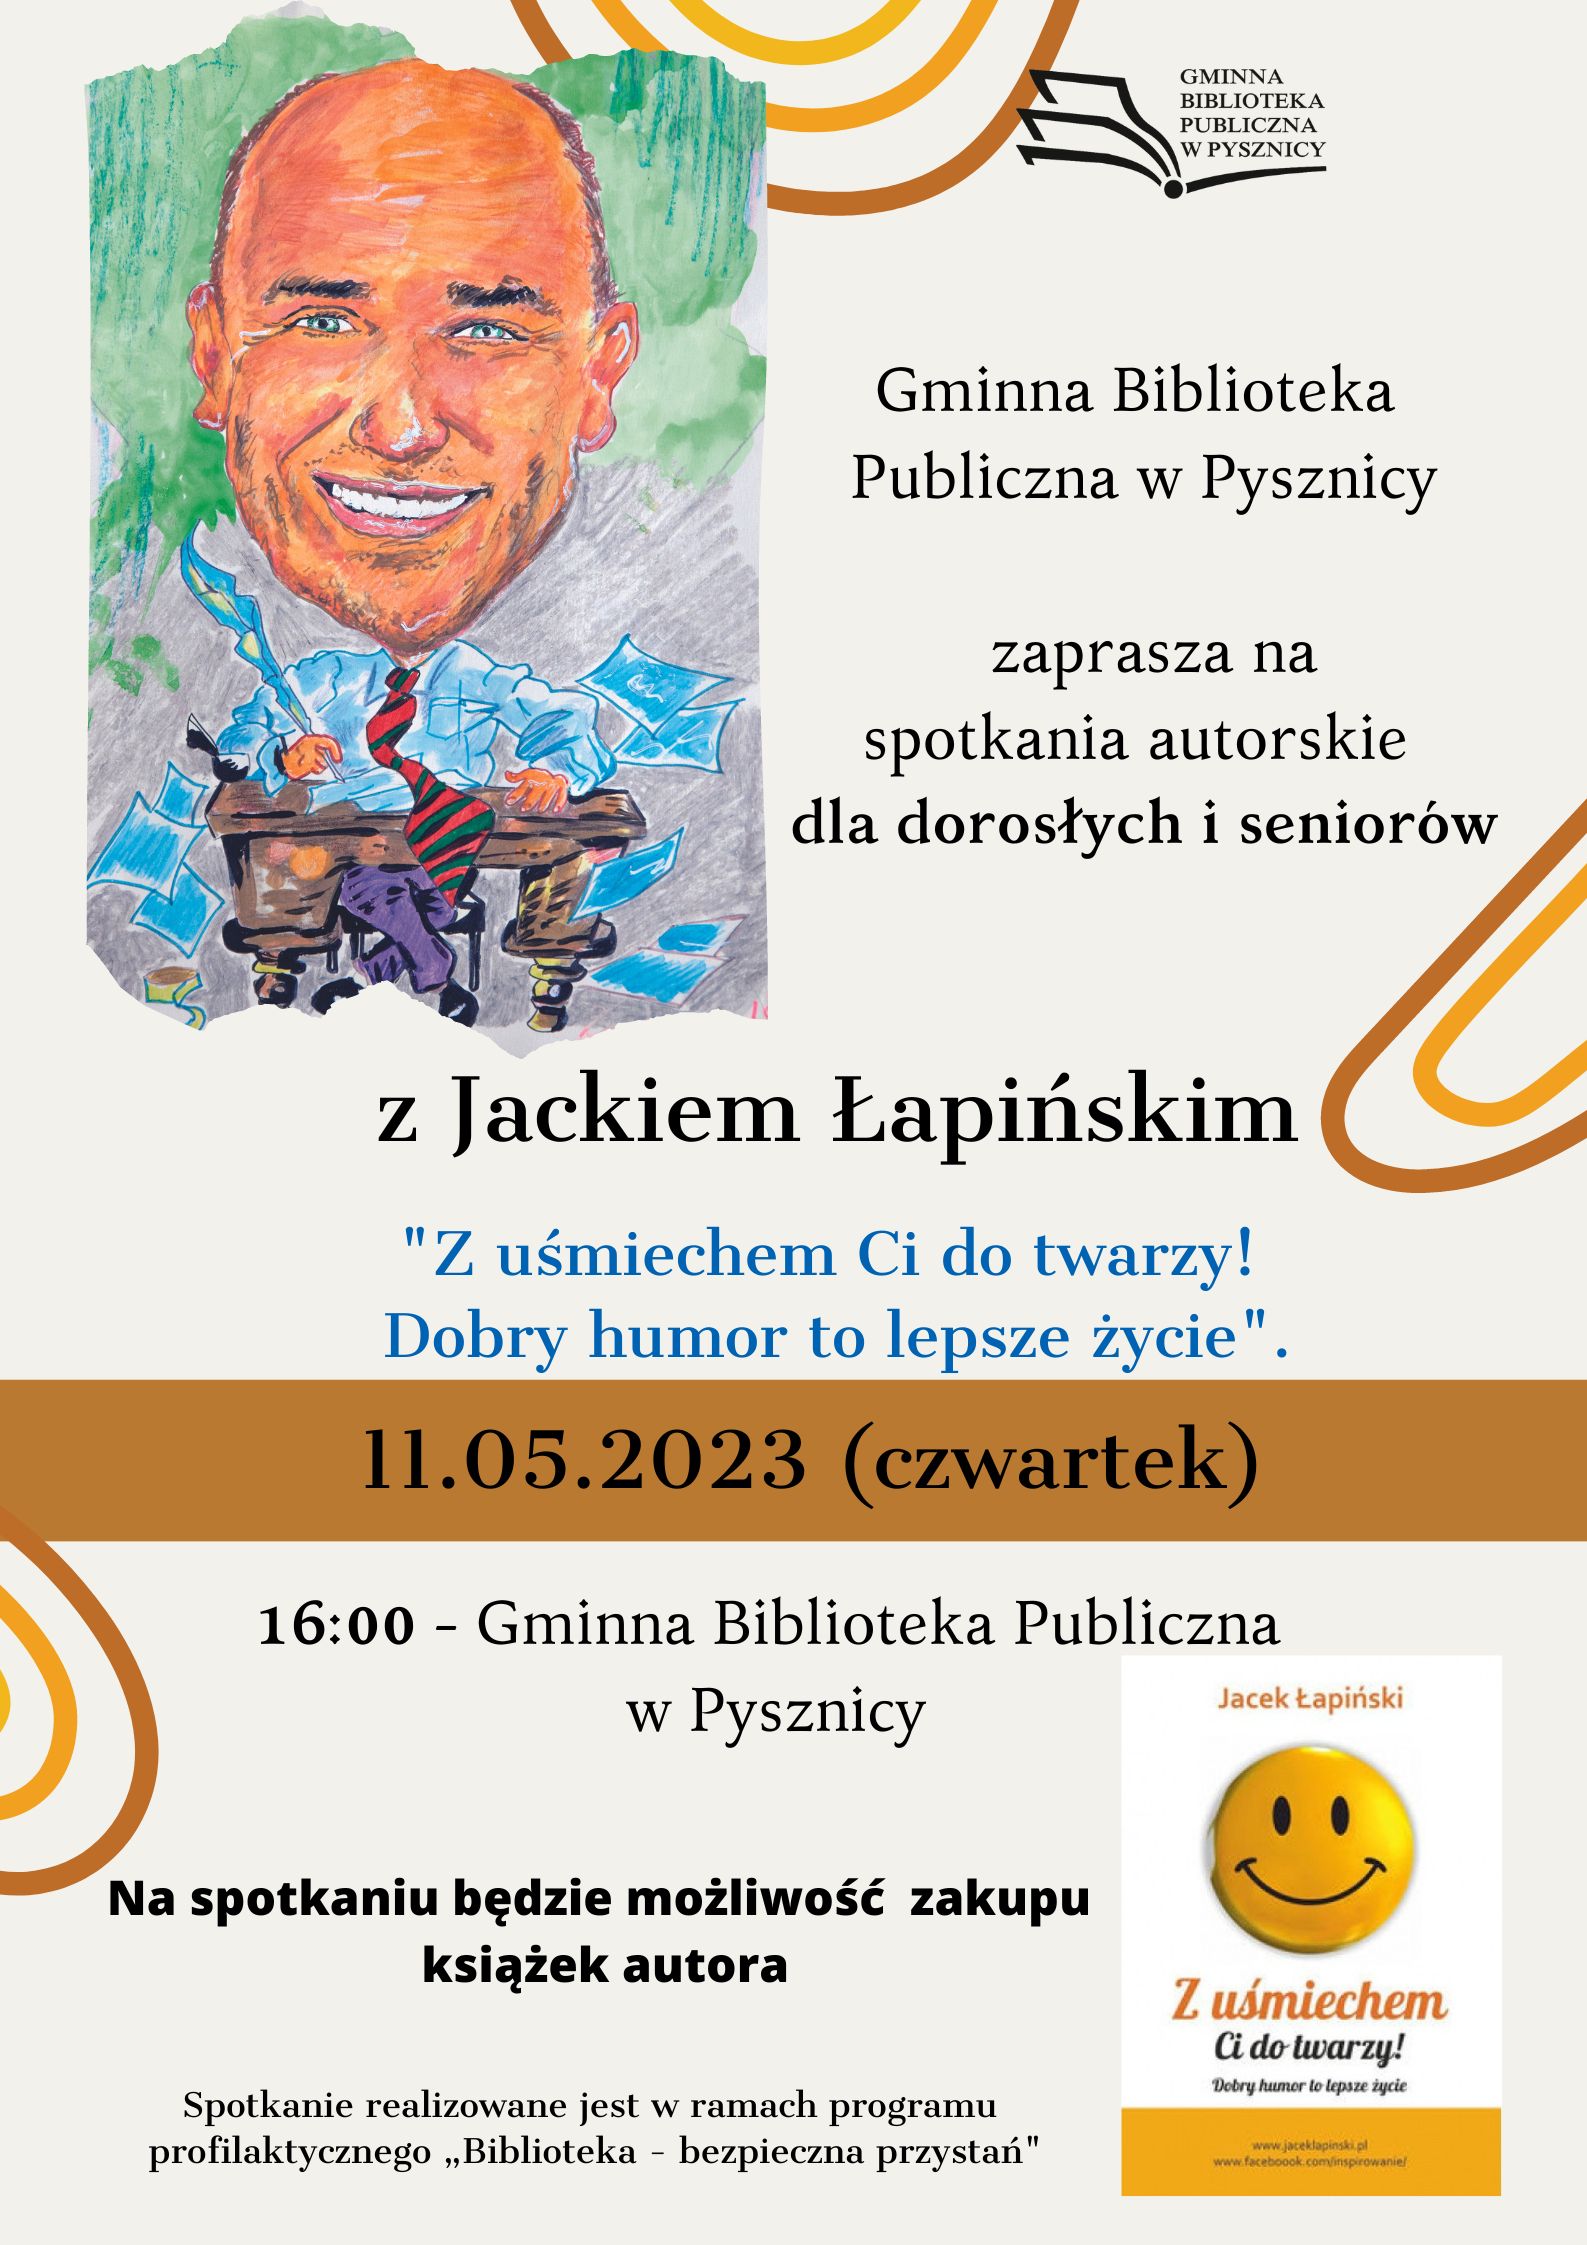 Spotkanie autorskie dla dorosłych i seniorów z Jackiem Łapińskim